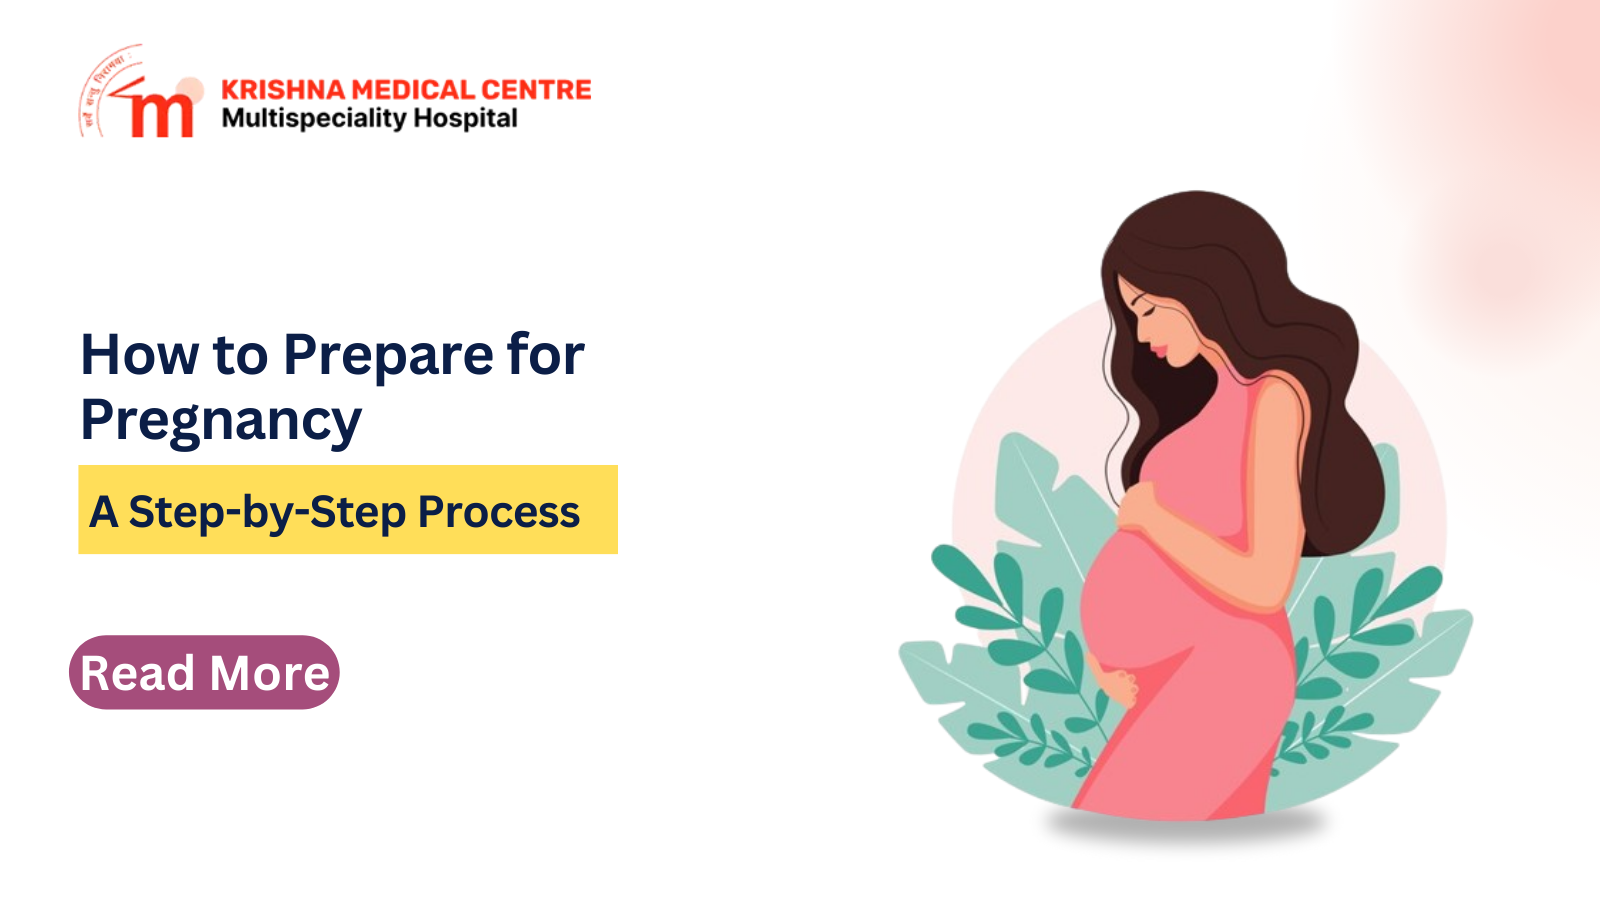 Understanding pregnancy preparation